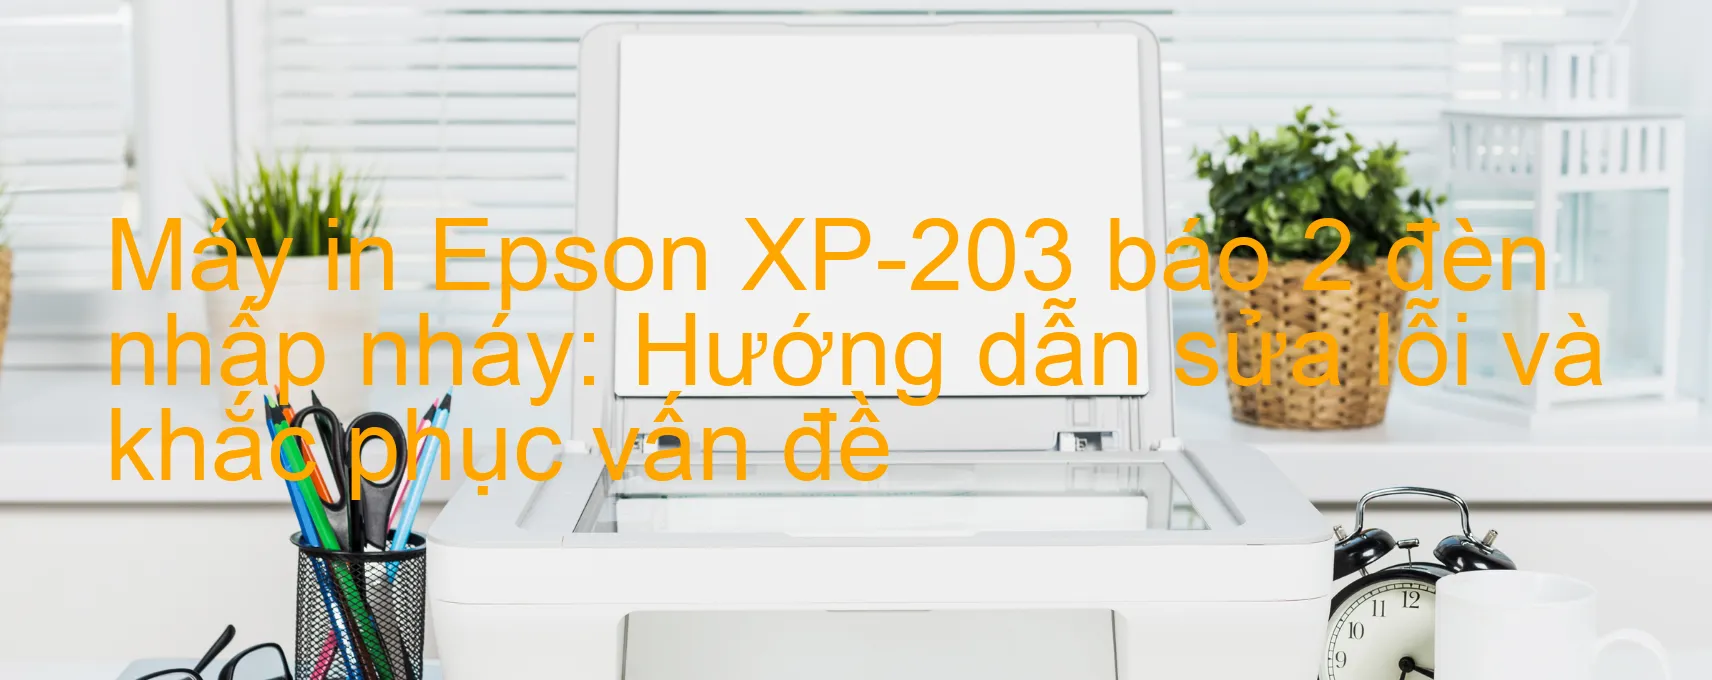 Máy in Epson XP-203 báo 2 đèn nhấp nháy: Hướng dẫn sửa lỗi và khắc phục vấn đề